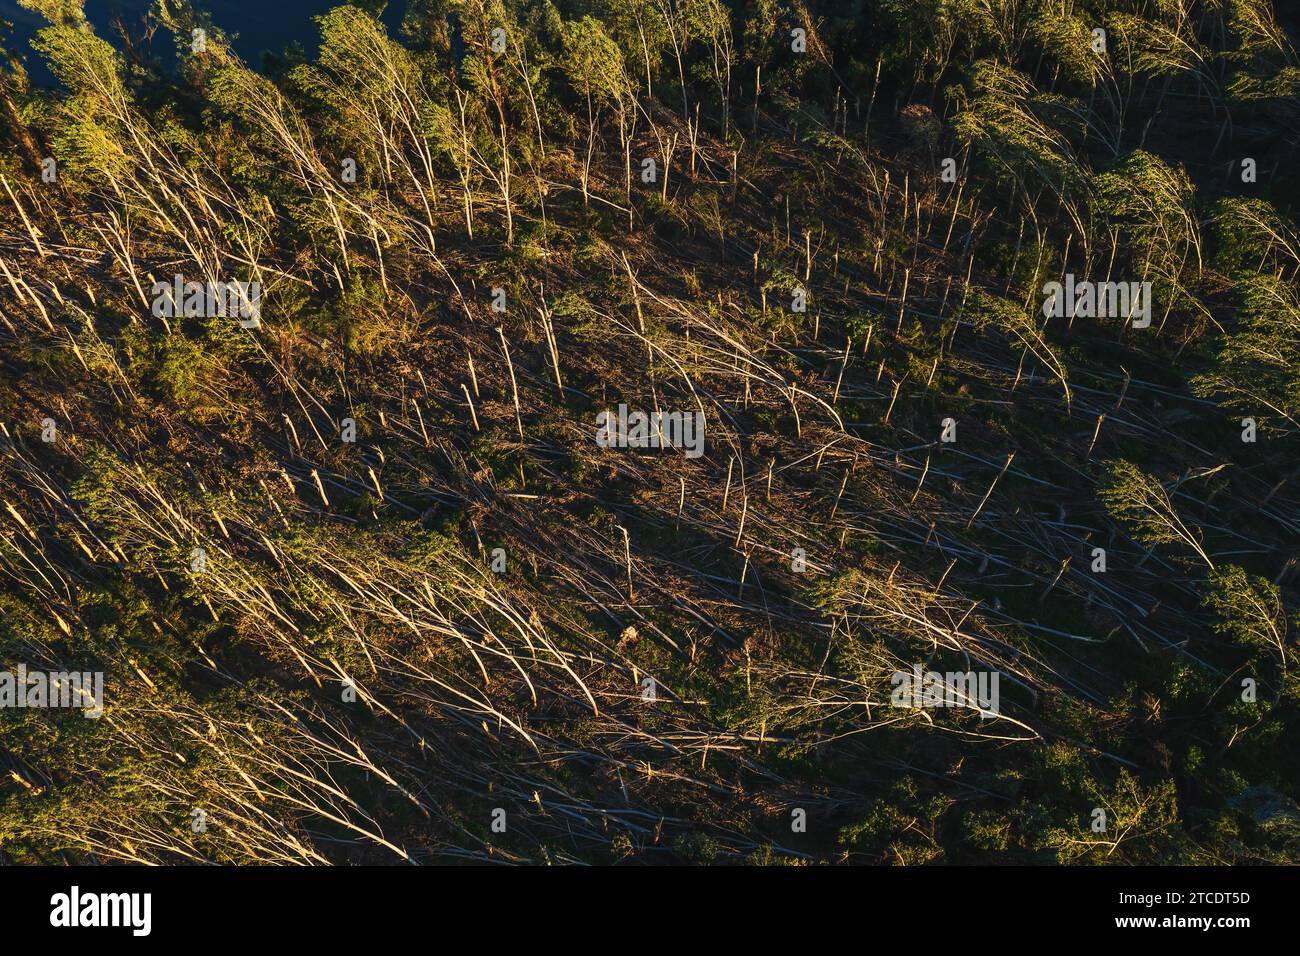 Vue aérienne du paysage forestier dévasté après une tempête supercellulaire en été, prise de vue par drone du paysage de dommages environnementaux depuis le haut Banque D'Images